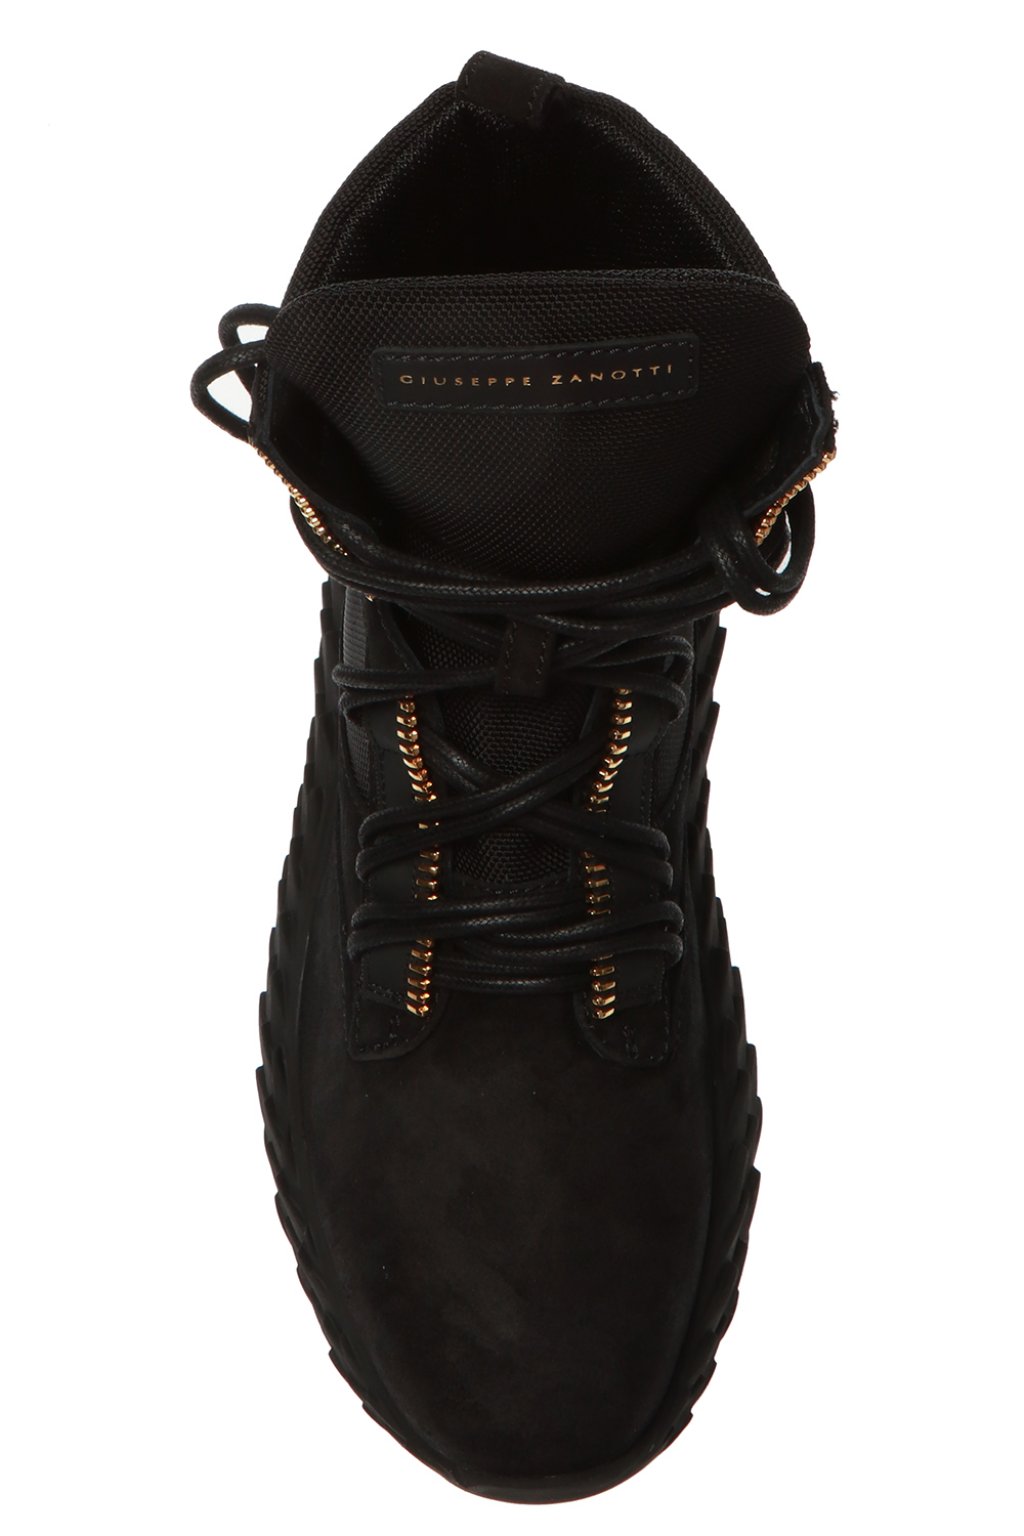 Giuseppe Zanotti ‘Urchin’ high-top sneakers | Women's Shoes | Vitkac